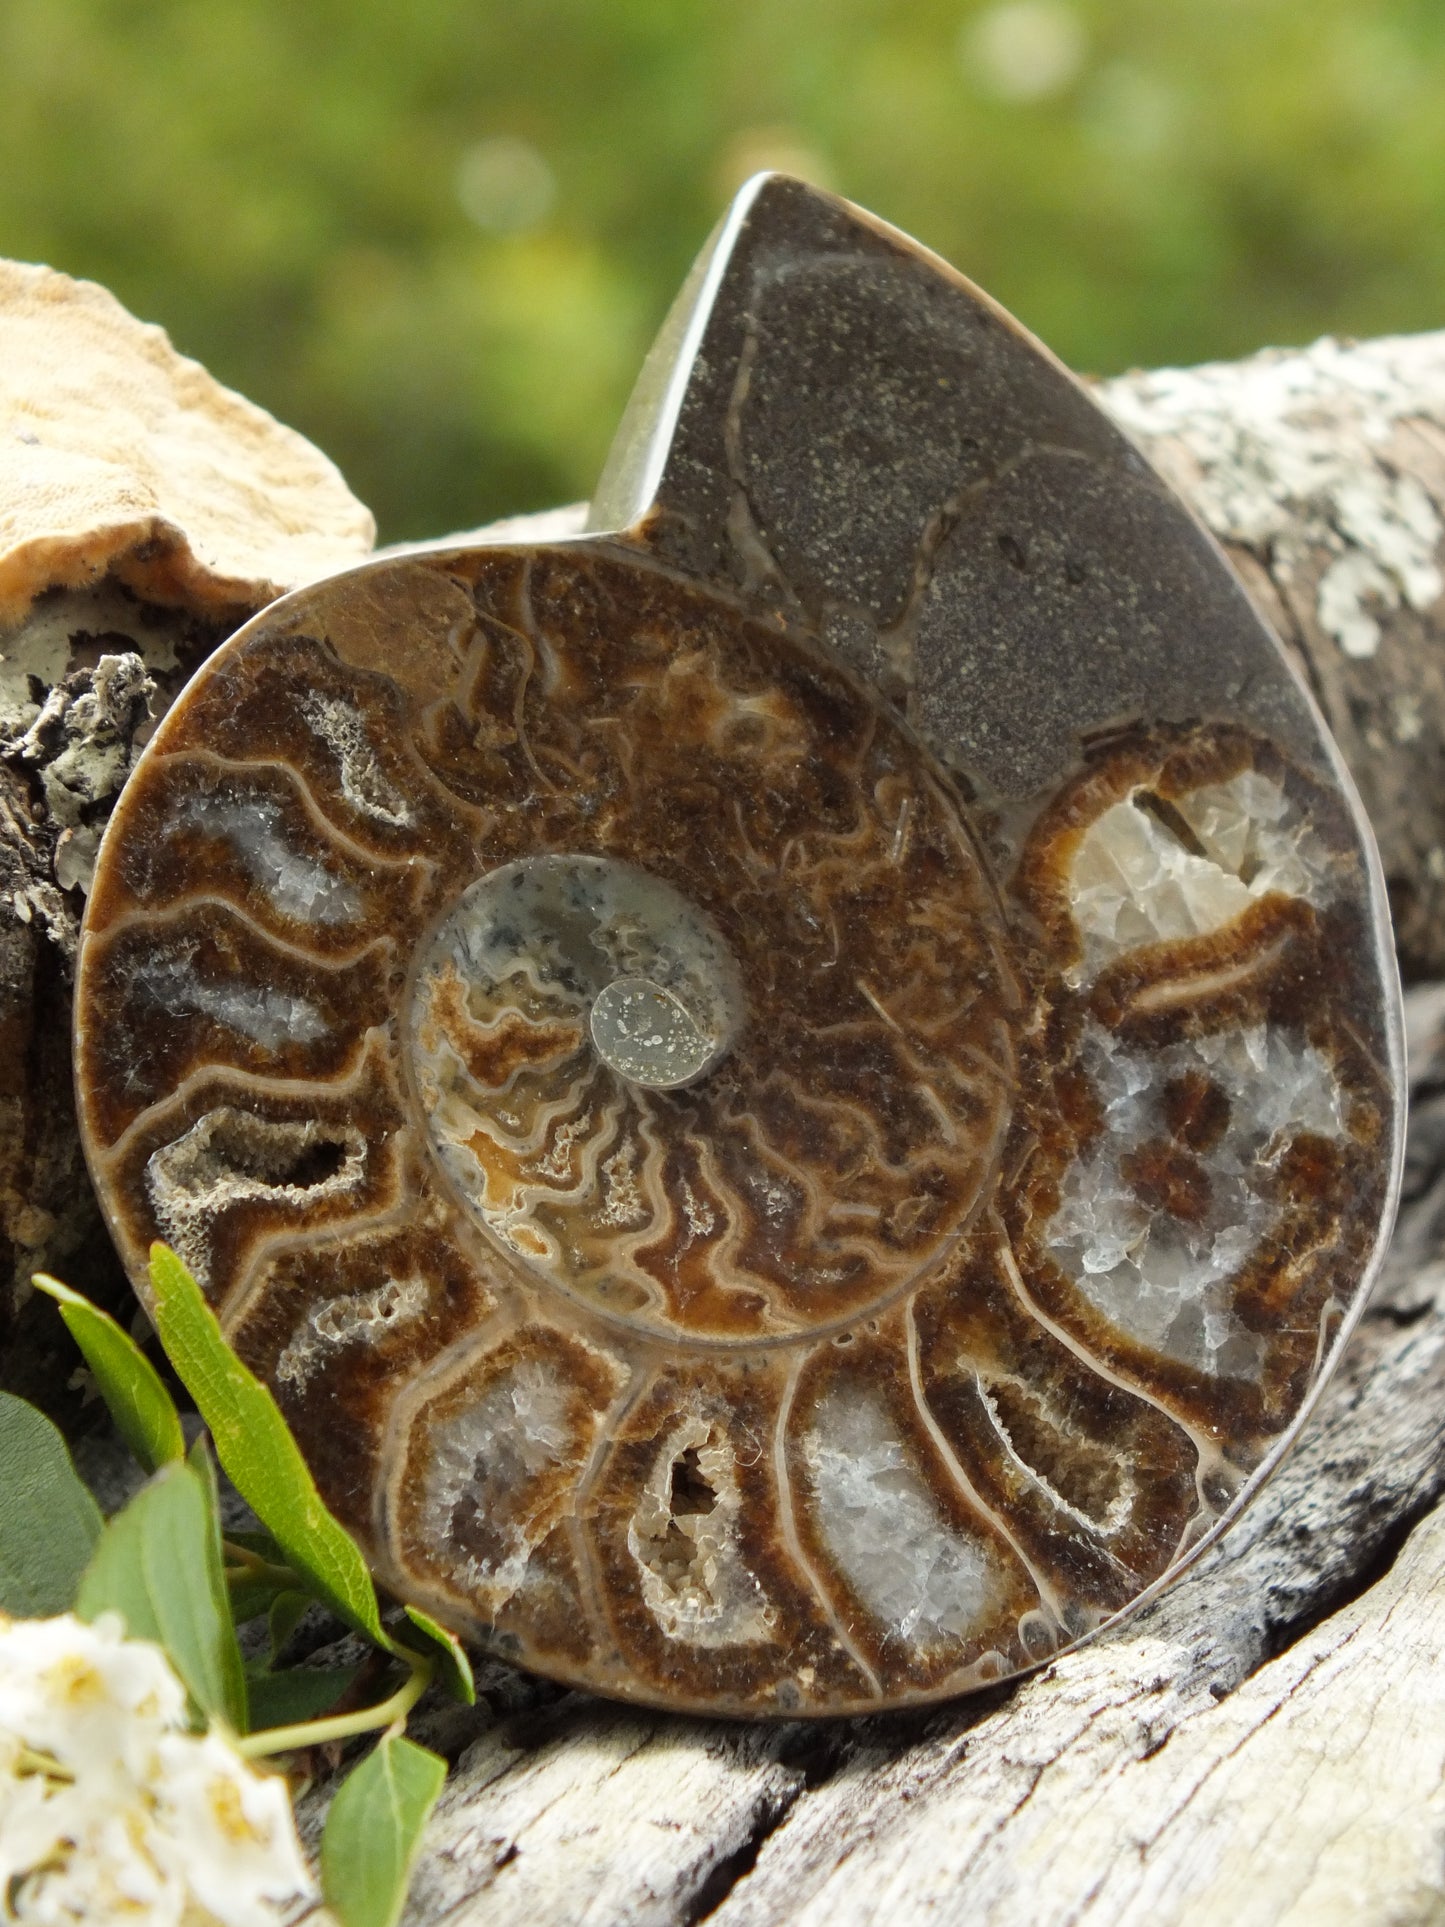 Stunning Ammonite Pair